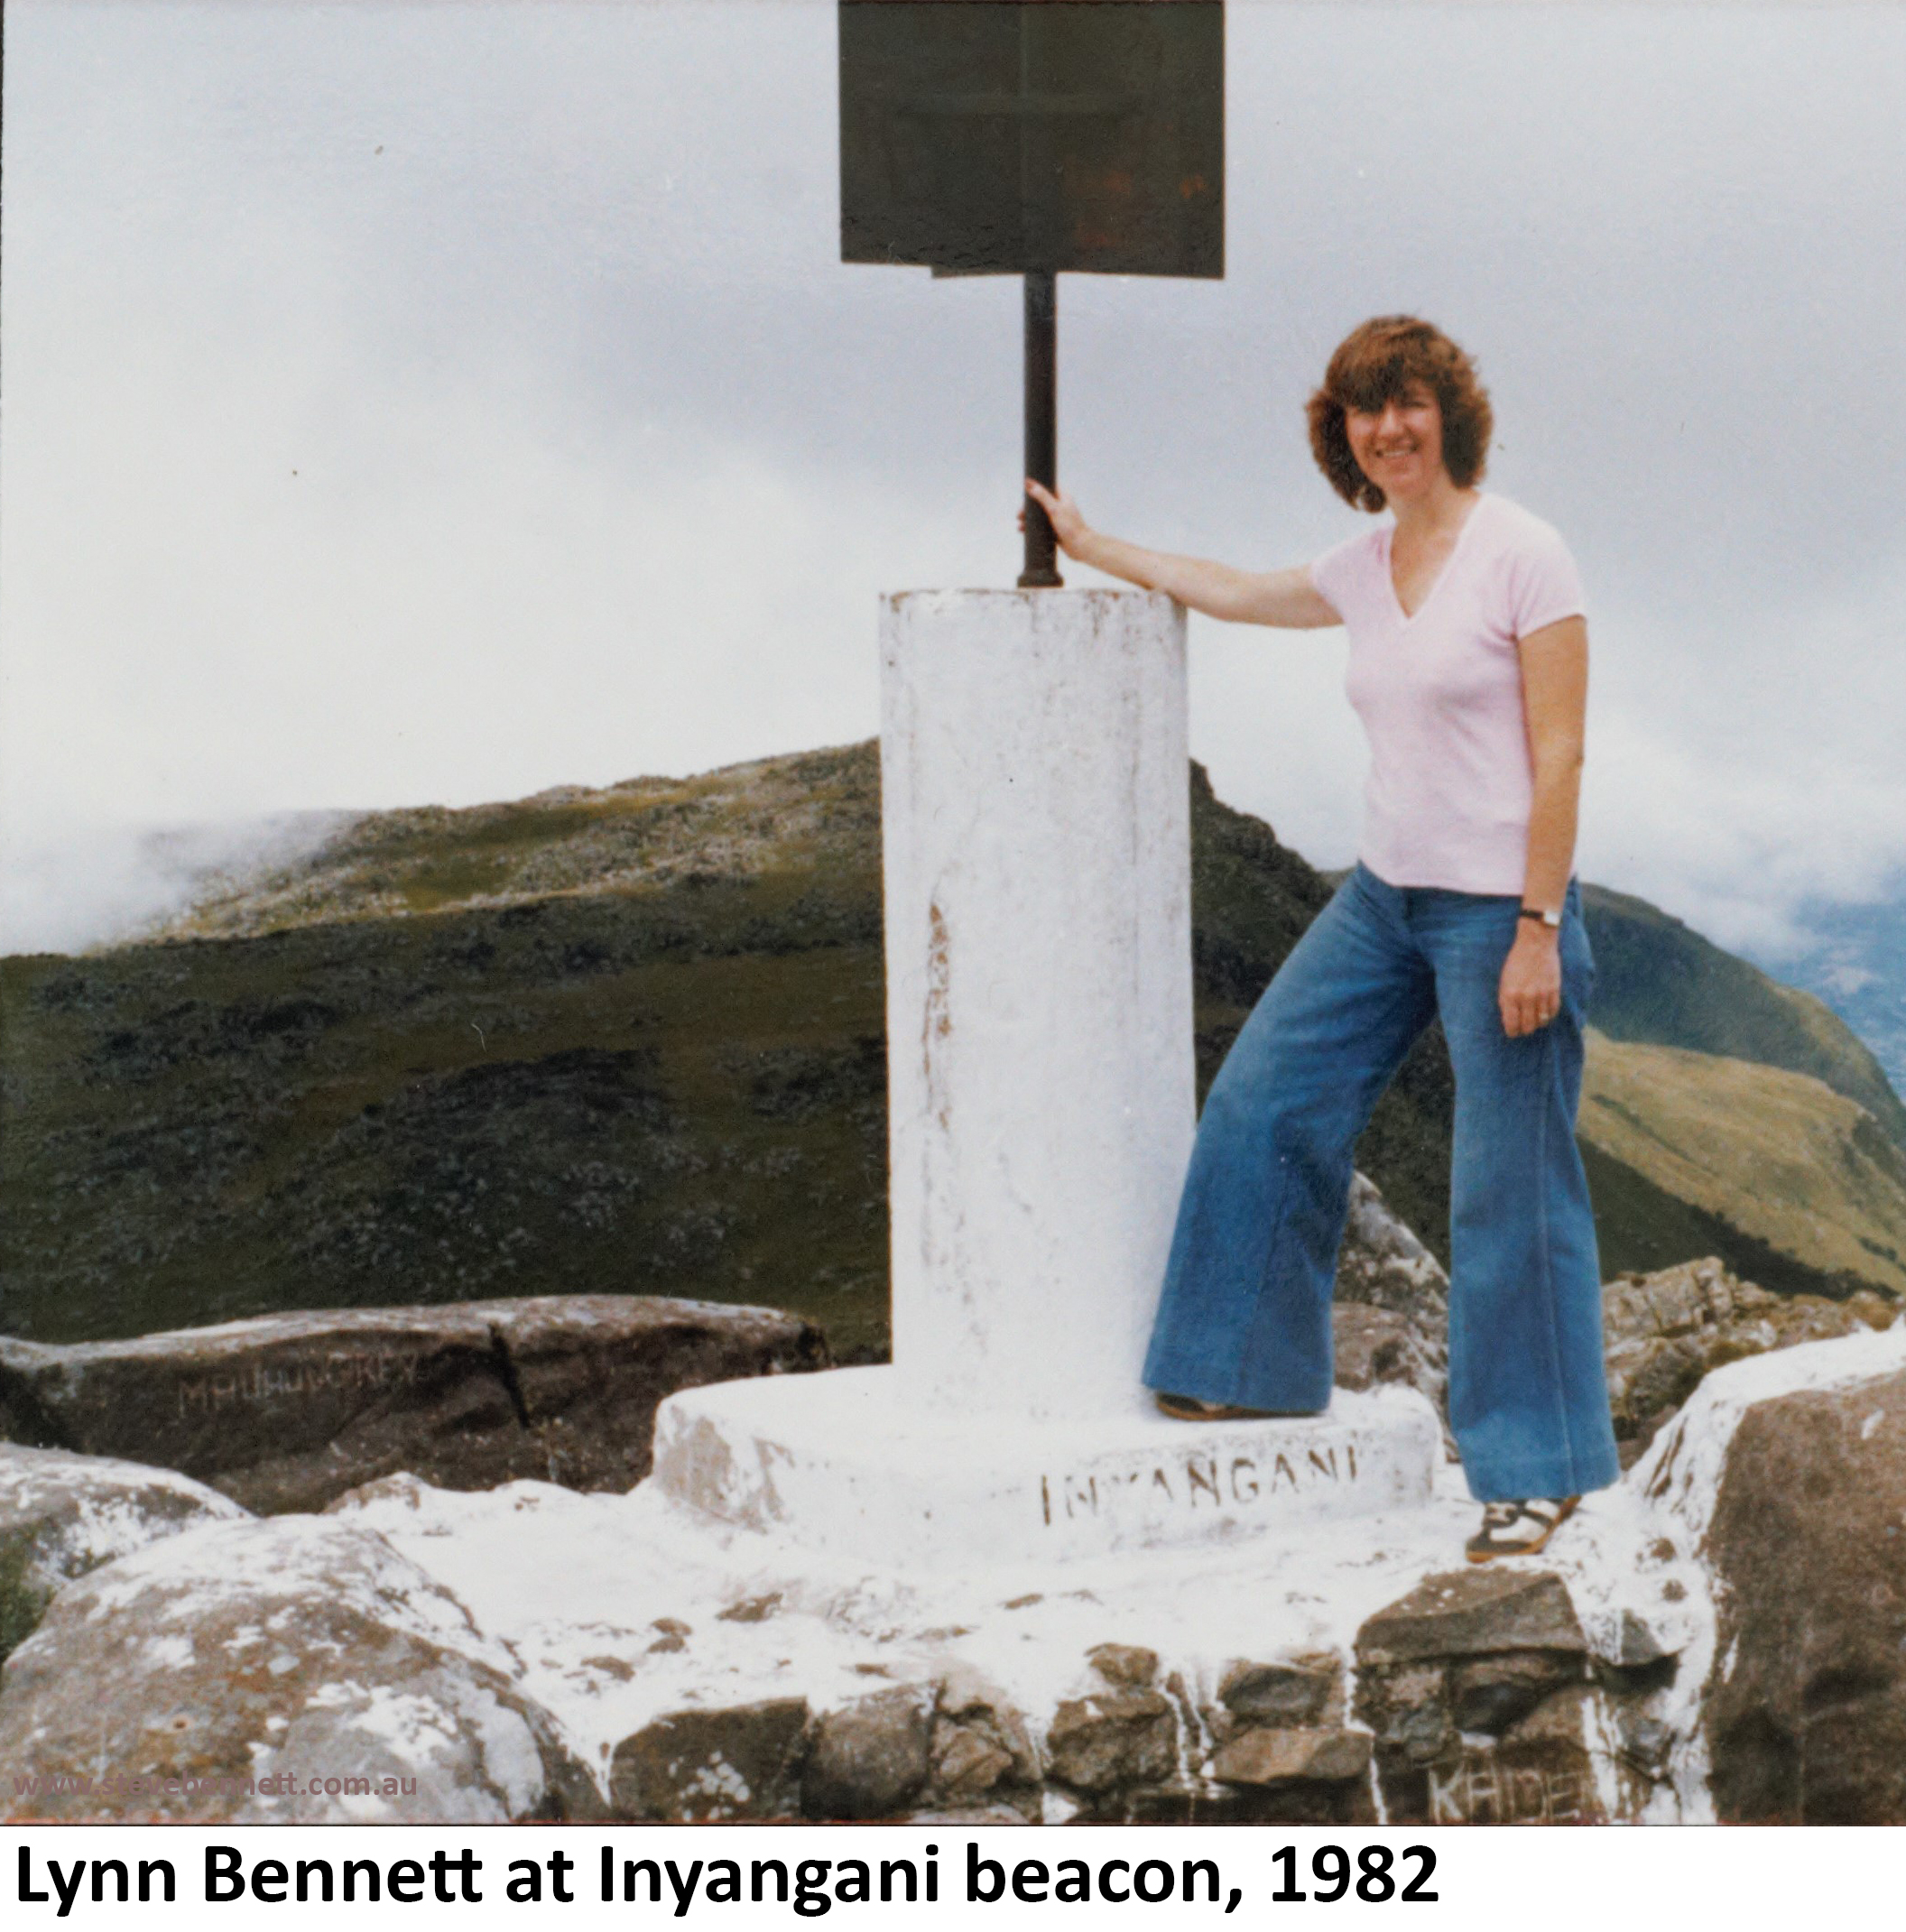 Lynn Bennett at Inyangani Mountain summit during honeymoon in 1982